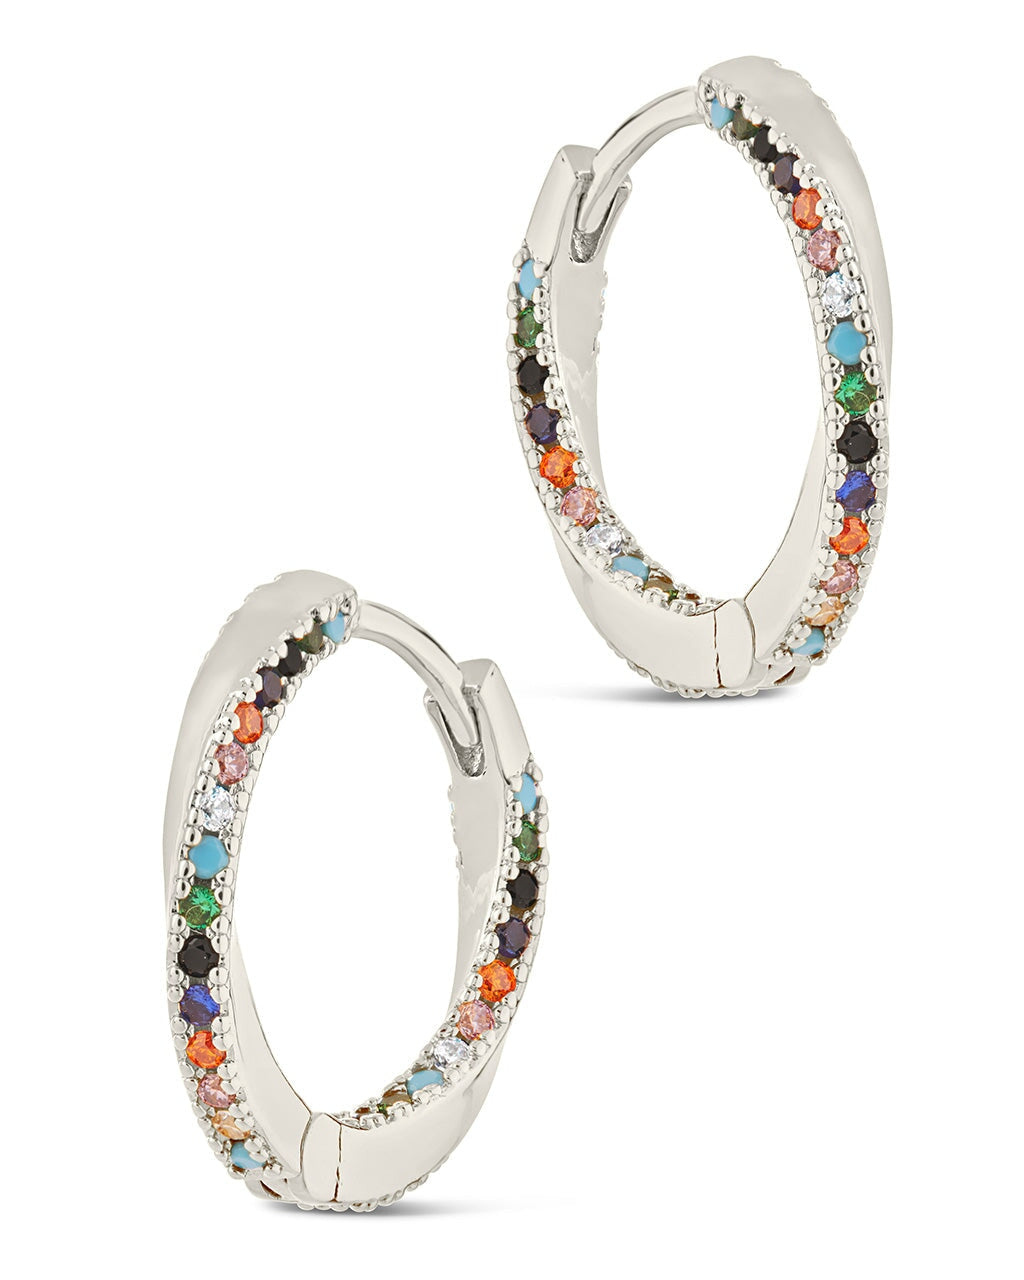 Embellished Hoop Earrings - Silver-colored - Ladies | H&M US